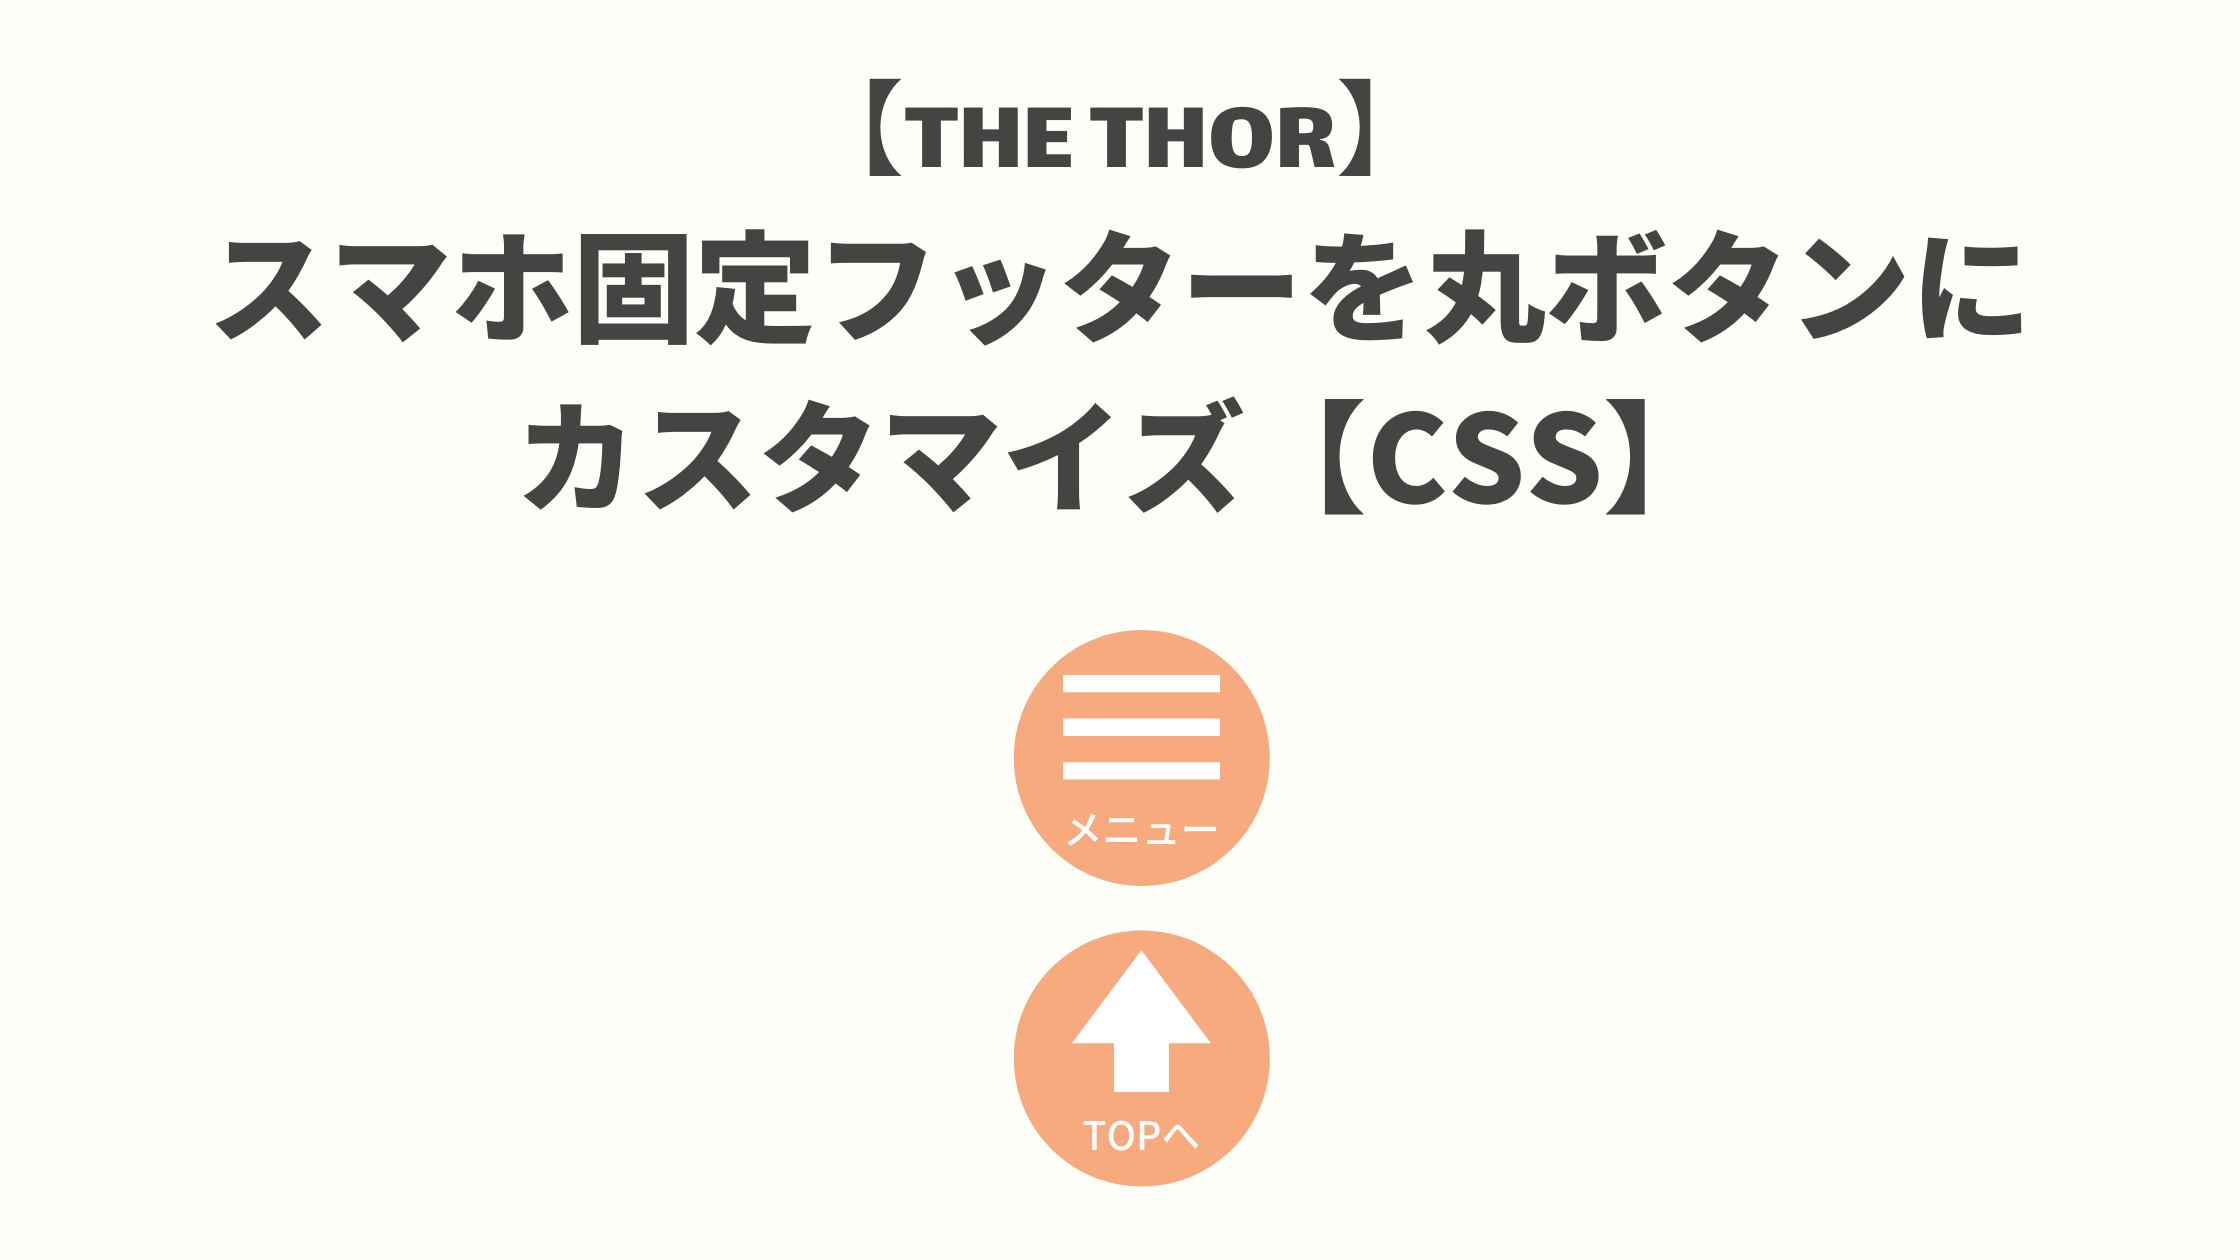 【THE THOR】スマホ固定フッターを丸ボタンにカスタマイズ【CSS】